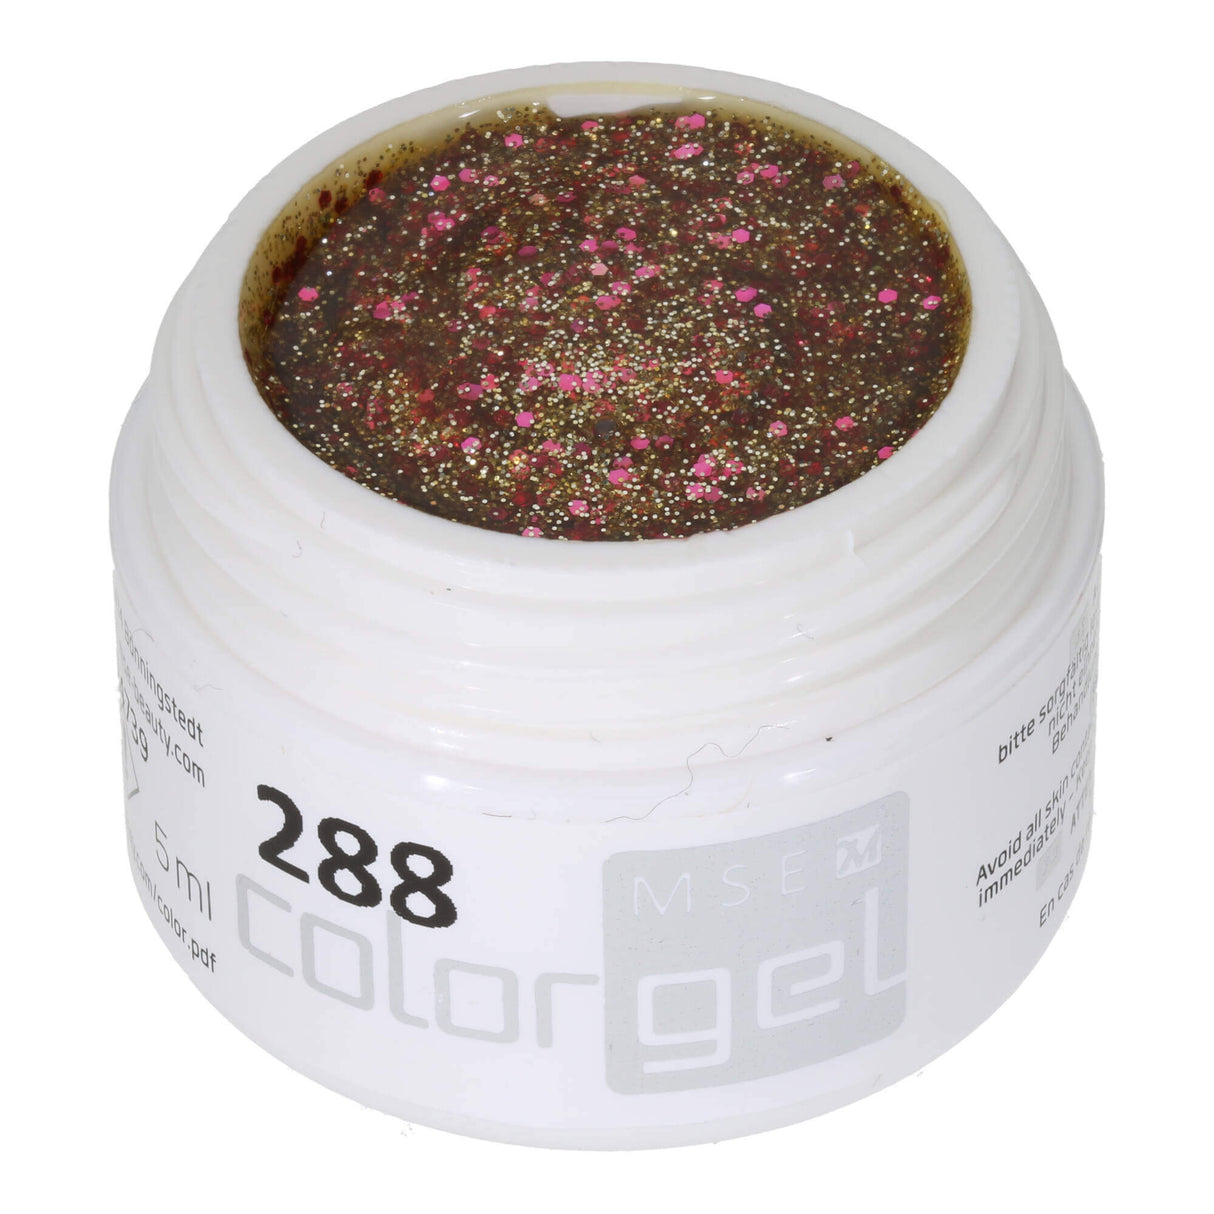 # 288 Premium-GLITTER Color Gel 5ml Chất gel trong suốt với ánh cam lấp lánh nổi bật với kim tuyến màu hồng thô và những sợi kim tuyến màu đồng